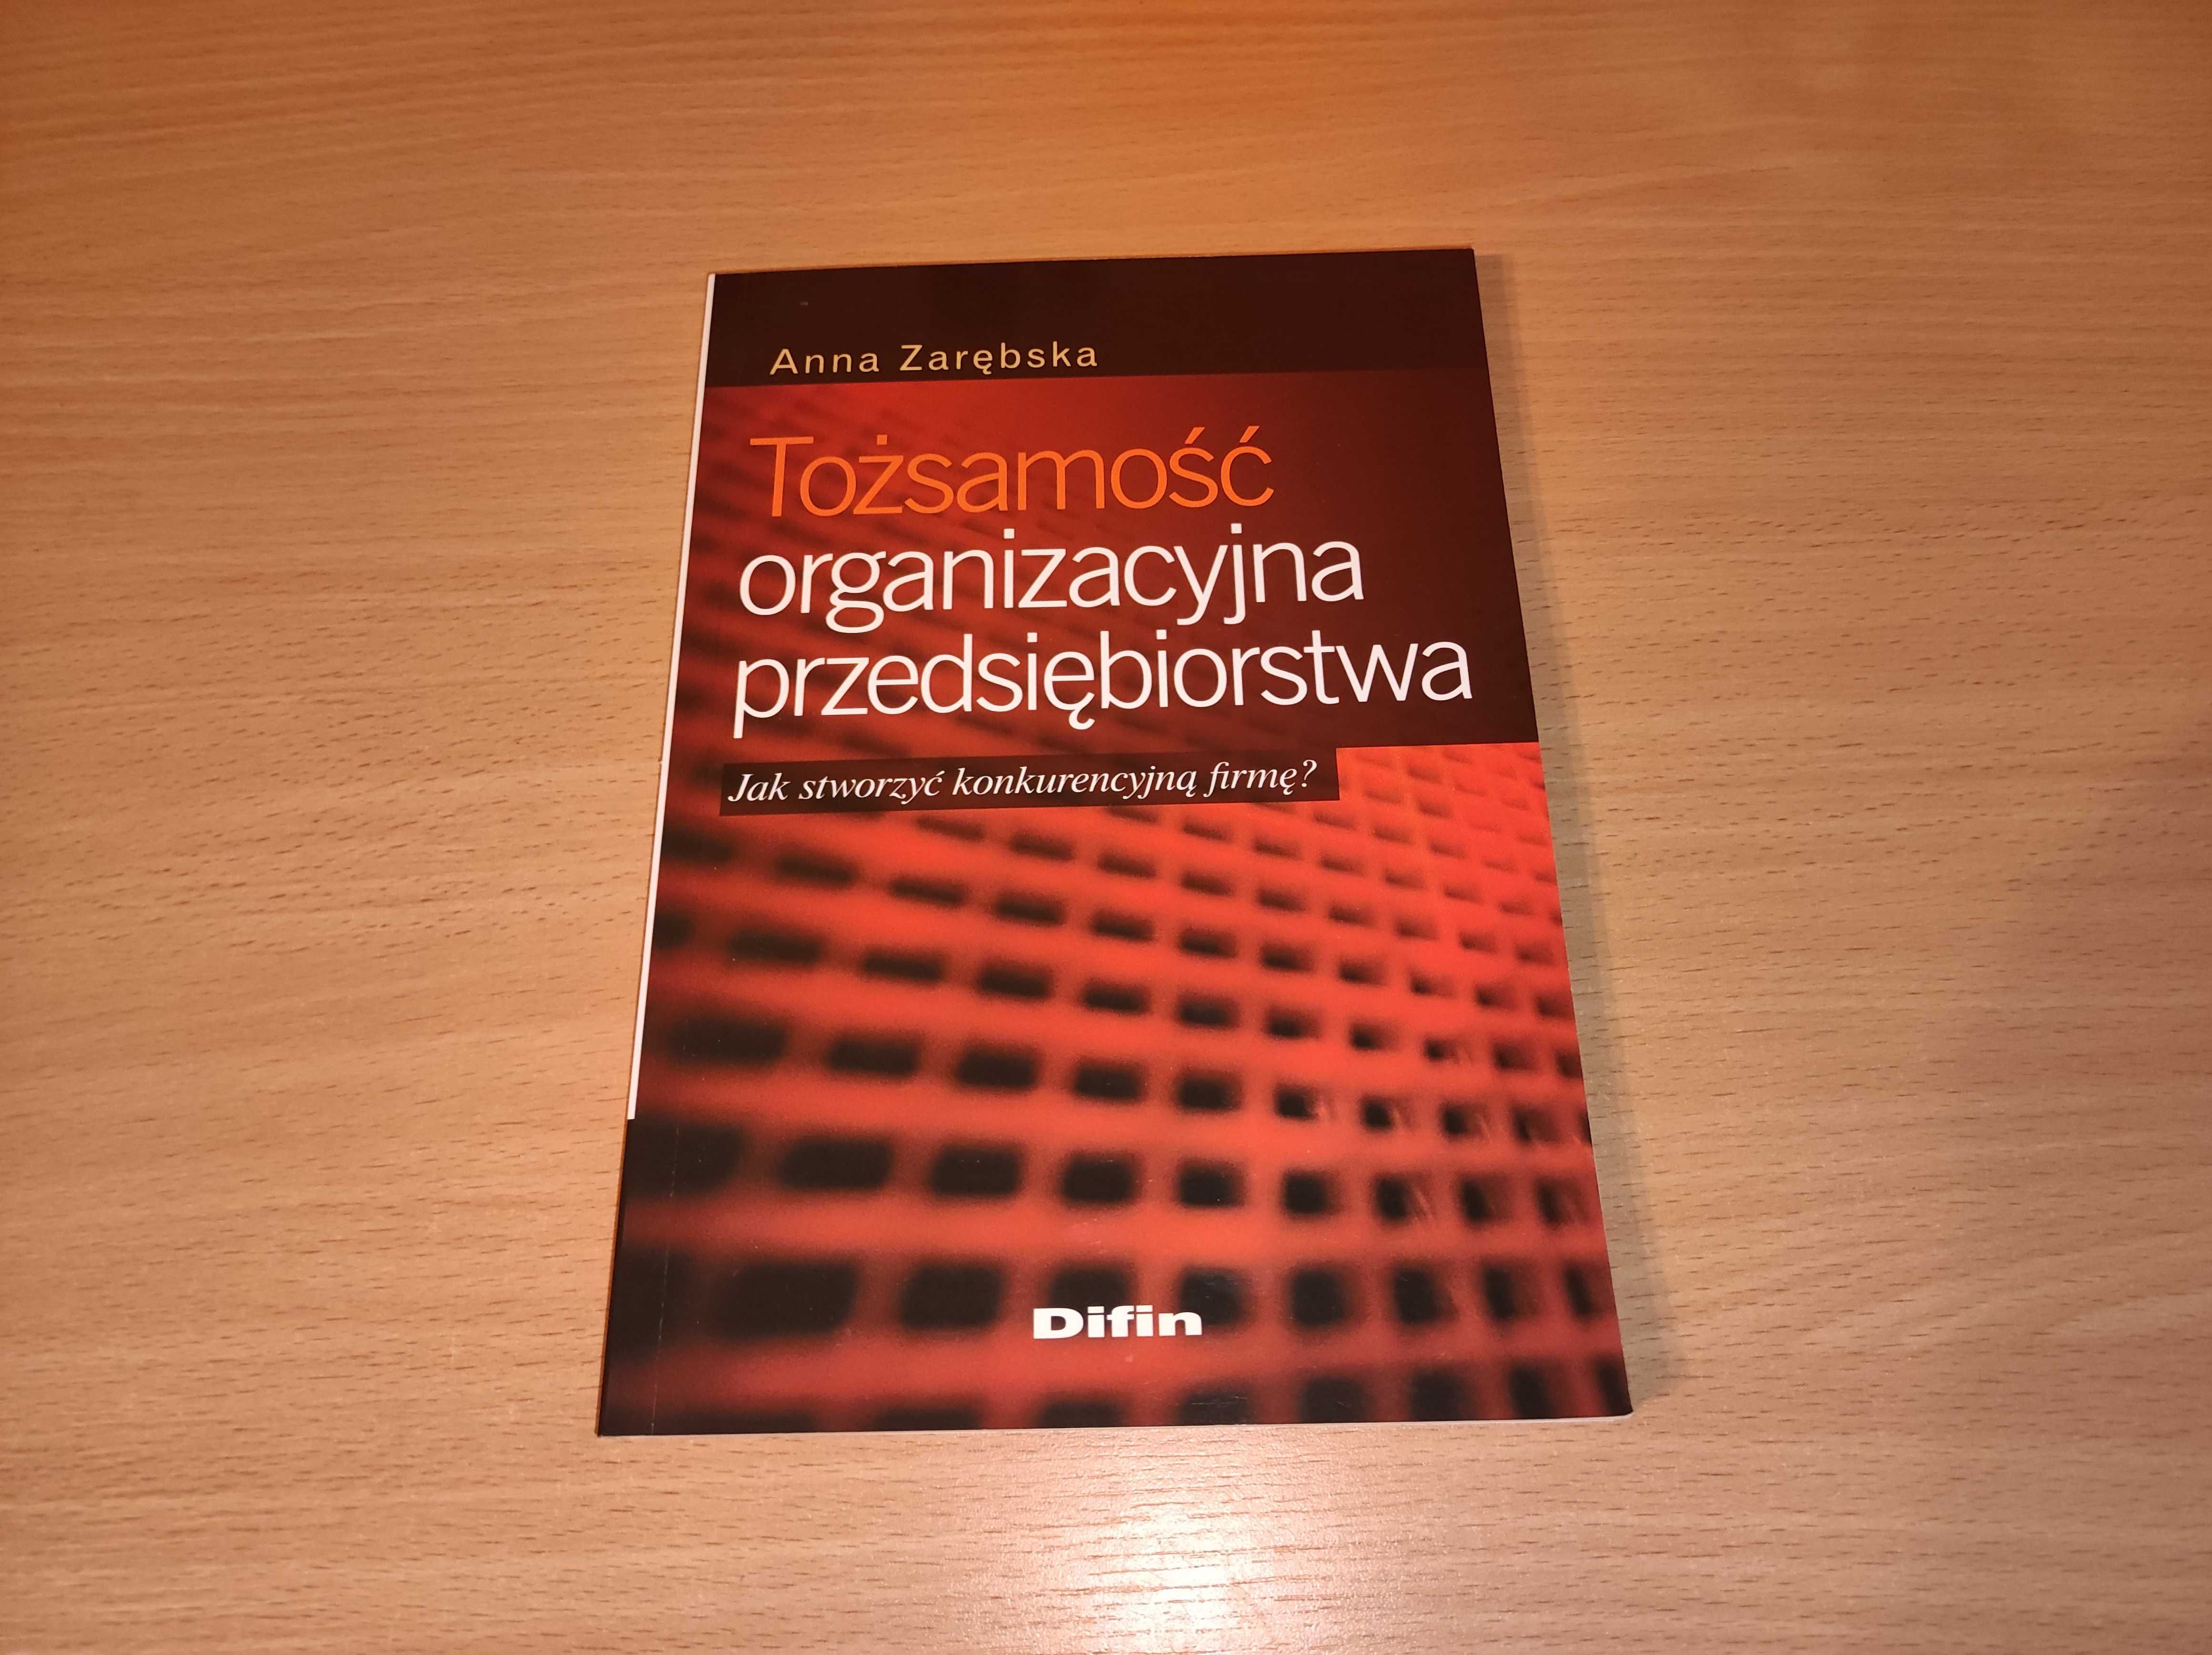 Książka "Tożsamość organizacyjna przedsiębiorstwa"